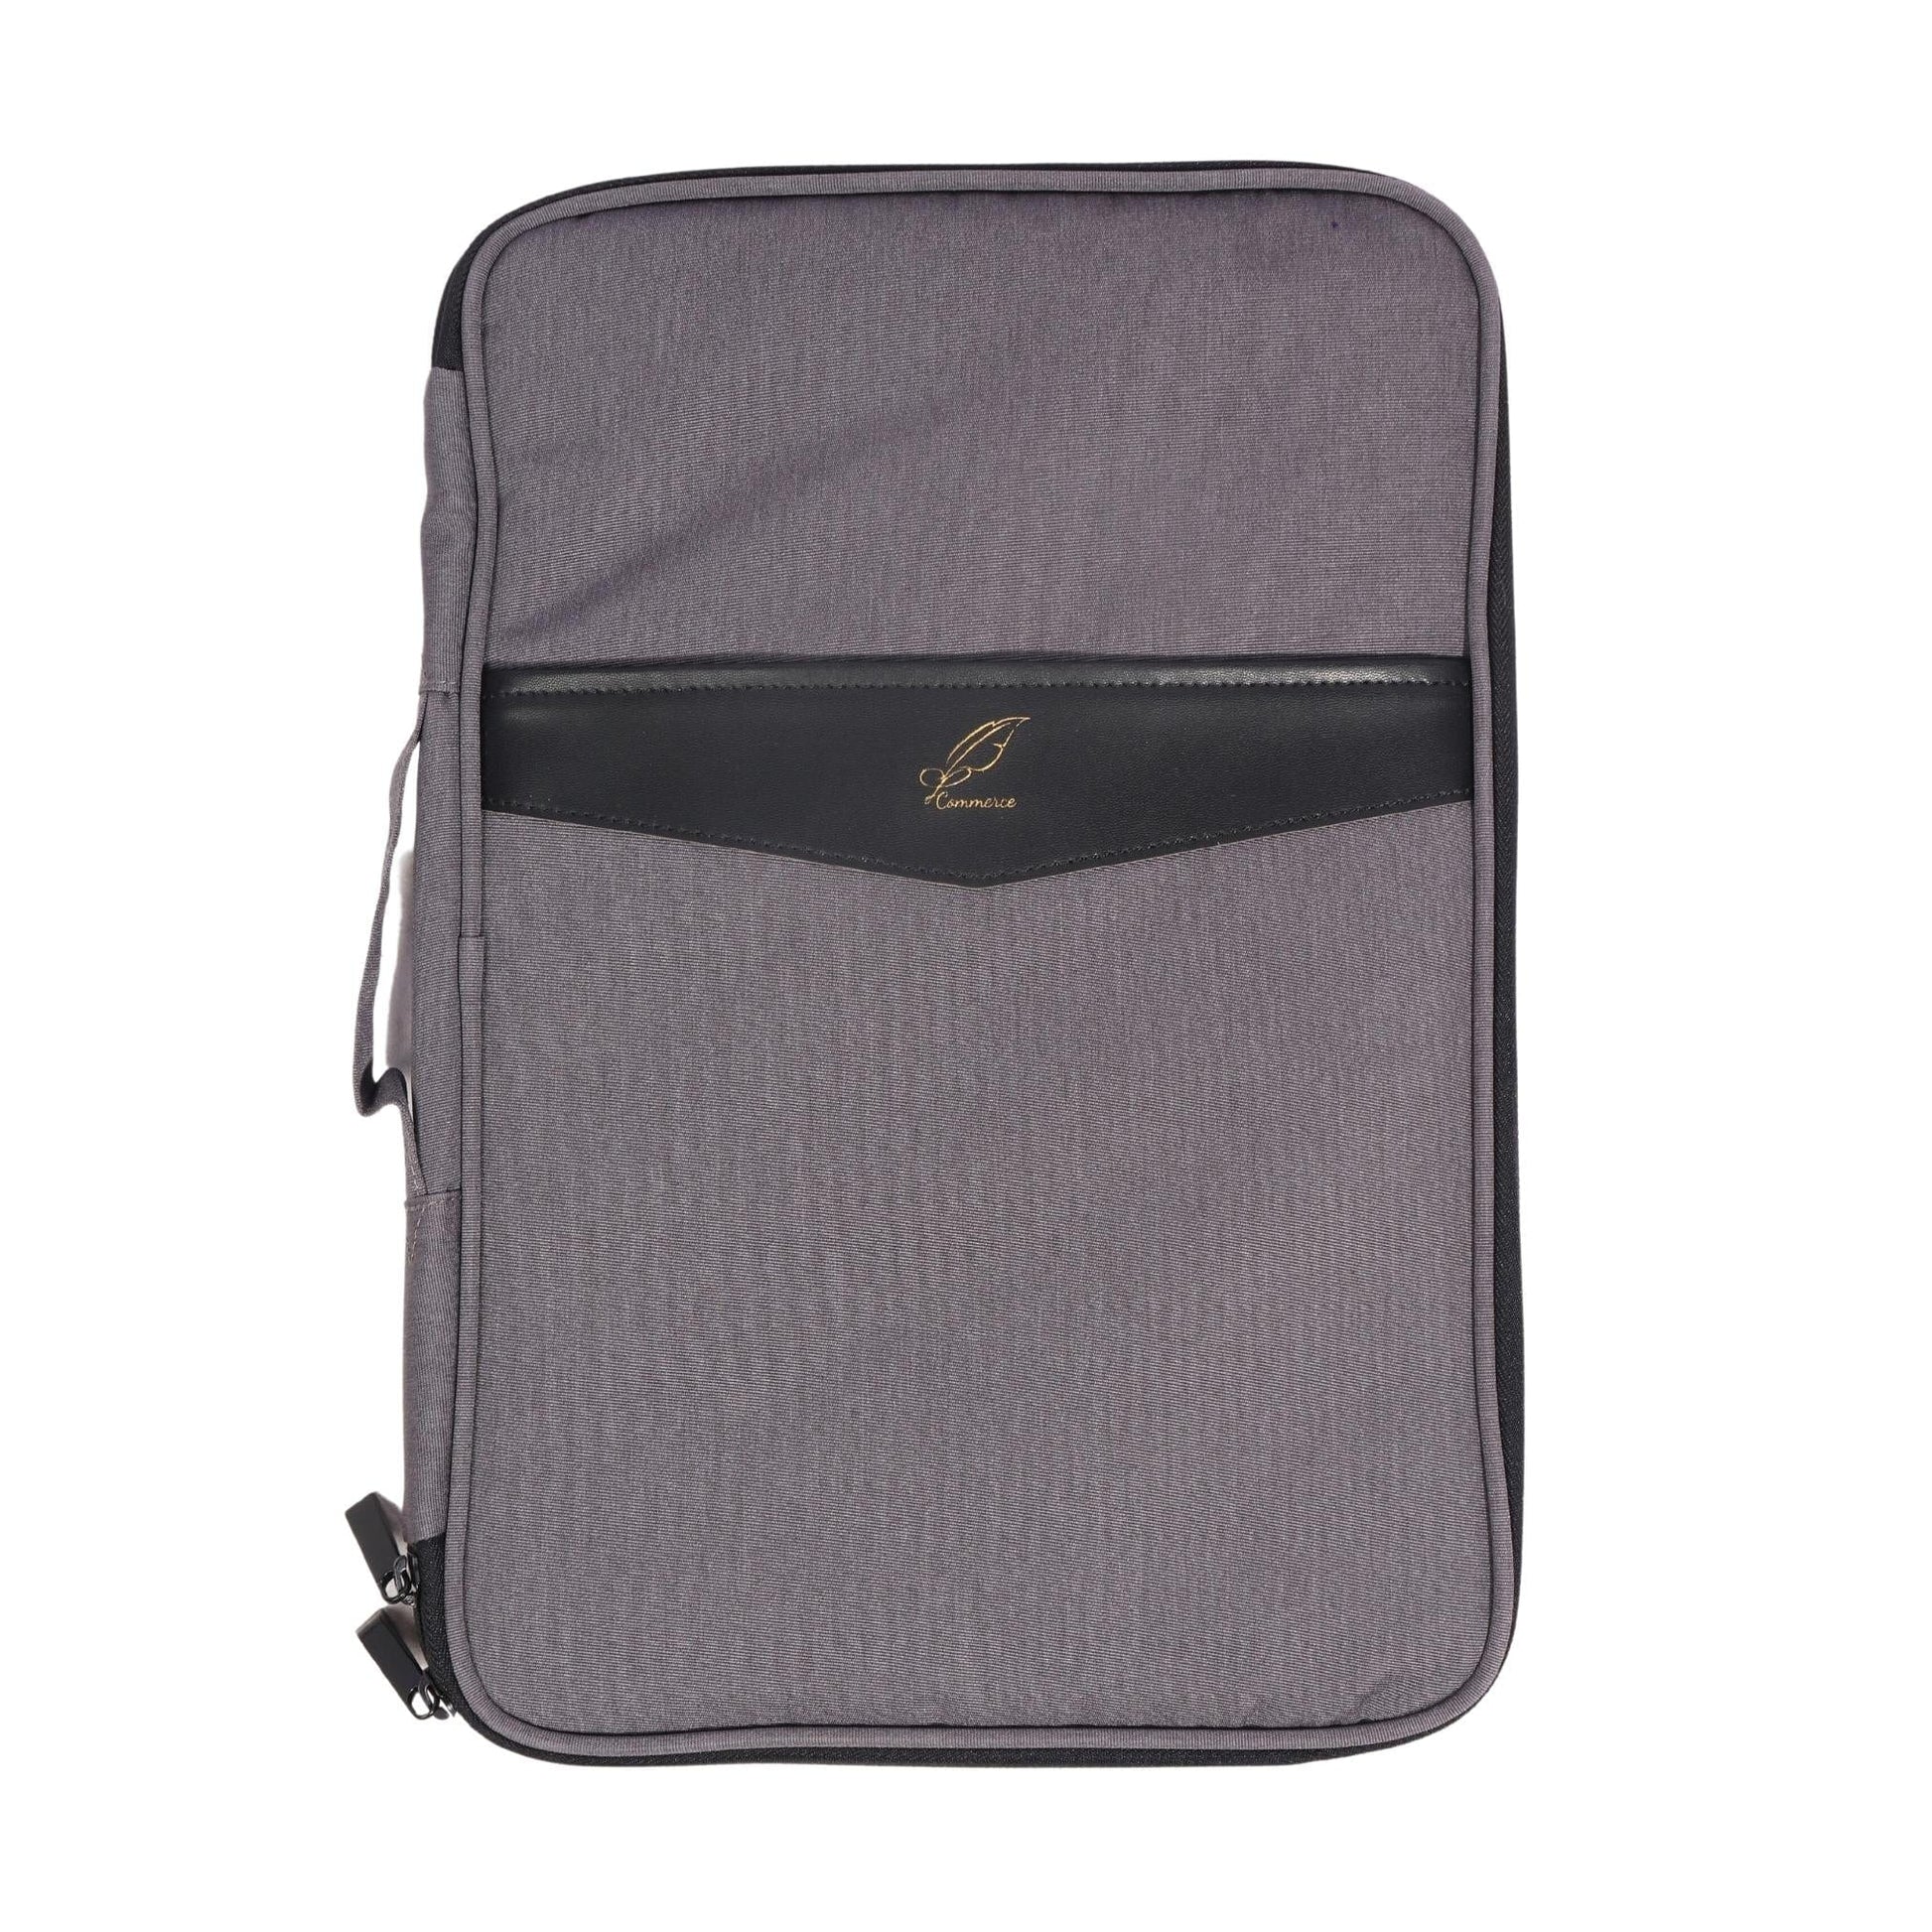 LE COMMERCE Laptops & Accessories Grey LE COMMERCE - Multi-Functional Bag